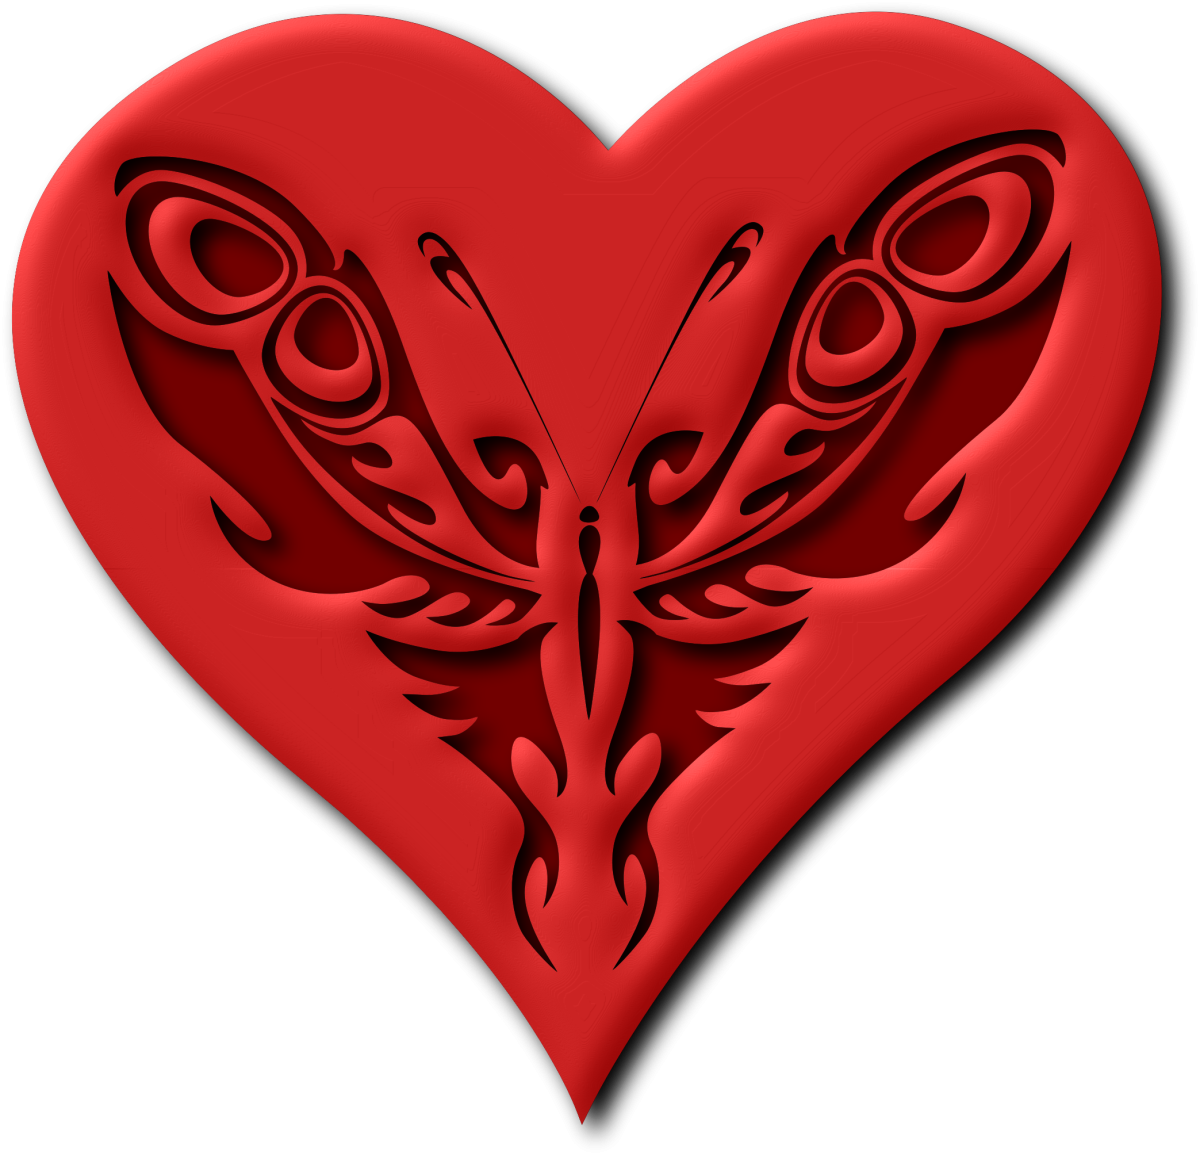 Сердечко. Сердце с бабочками. Сердце картинка. Сердечко 2. Бабочка поэтиного сердца